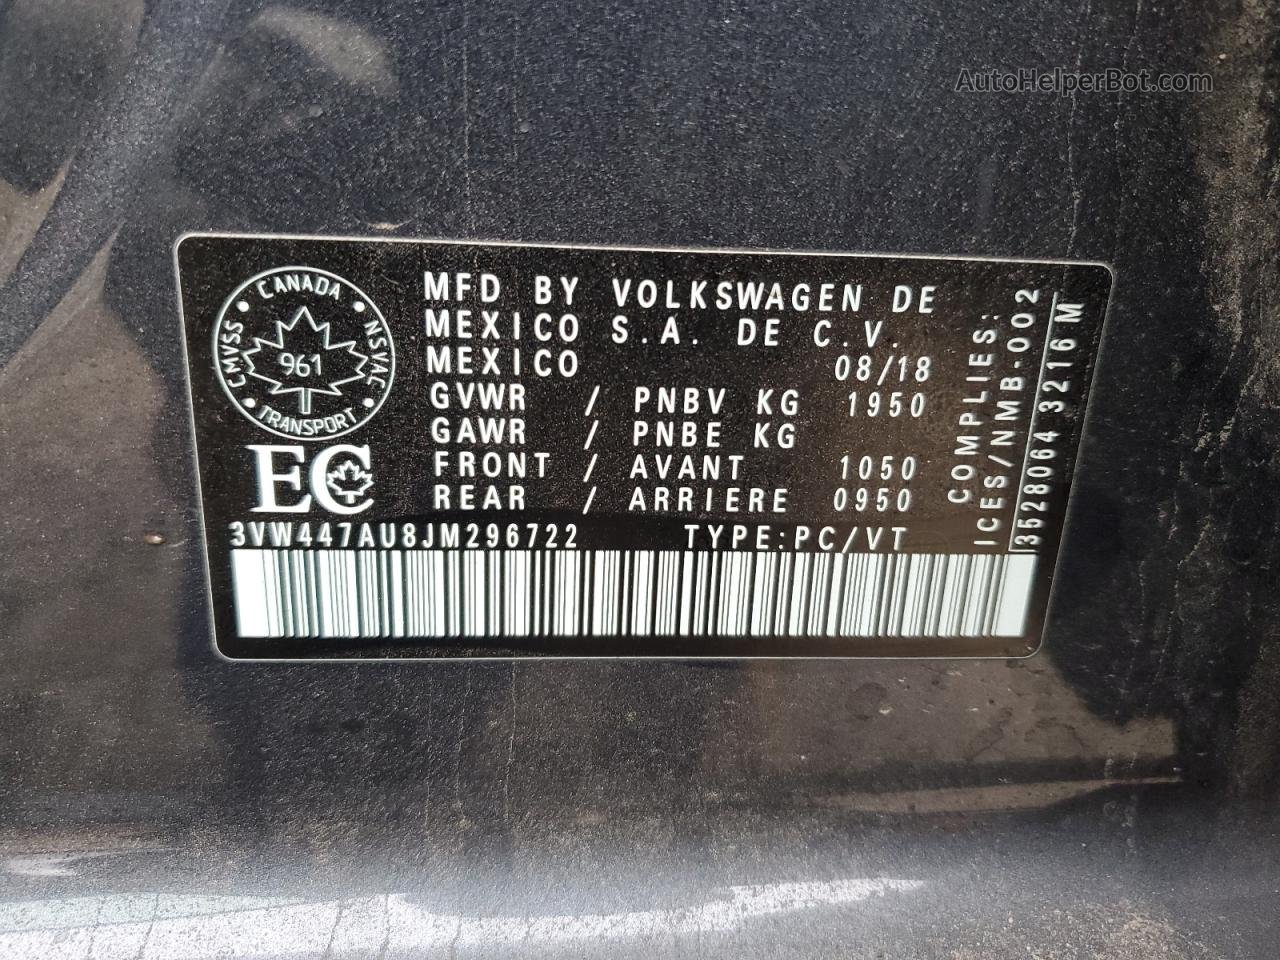 2018 Volkswagen Gti S/se Угольный vin: 3VW447AU8JM296722